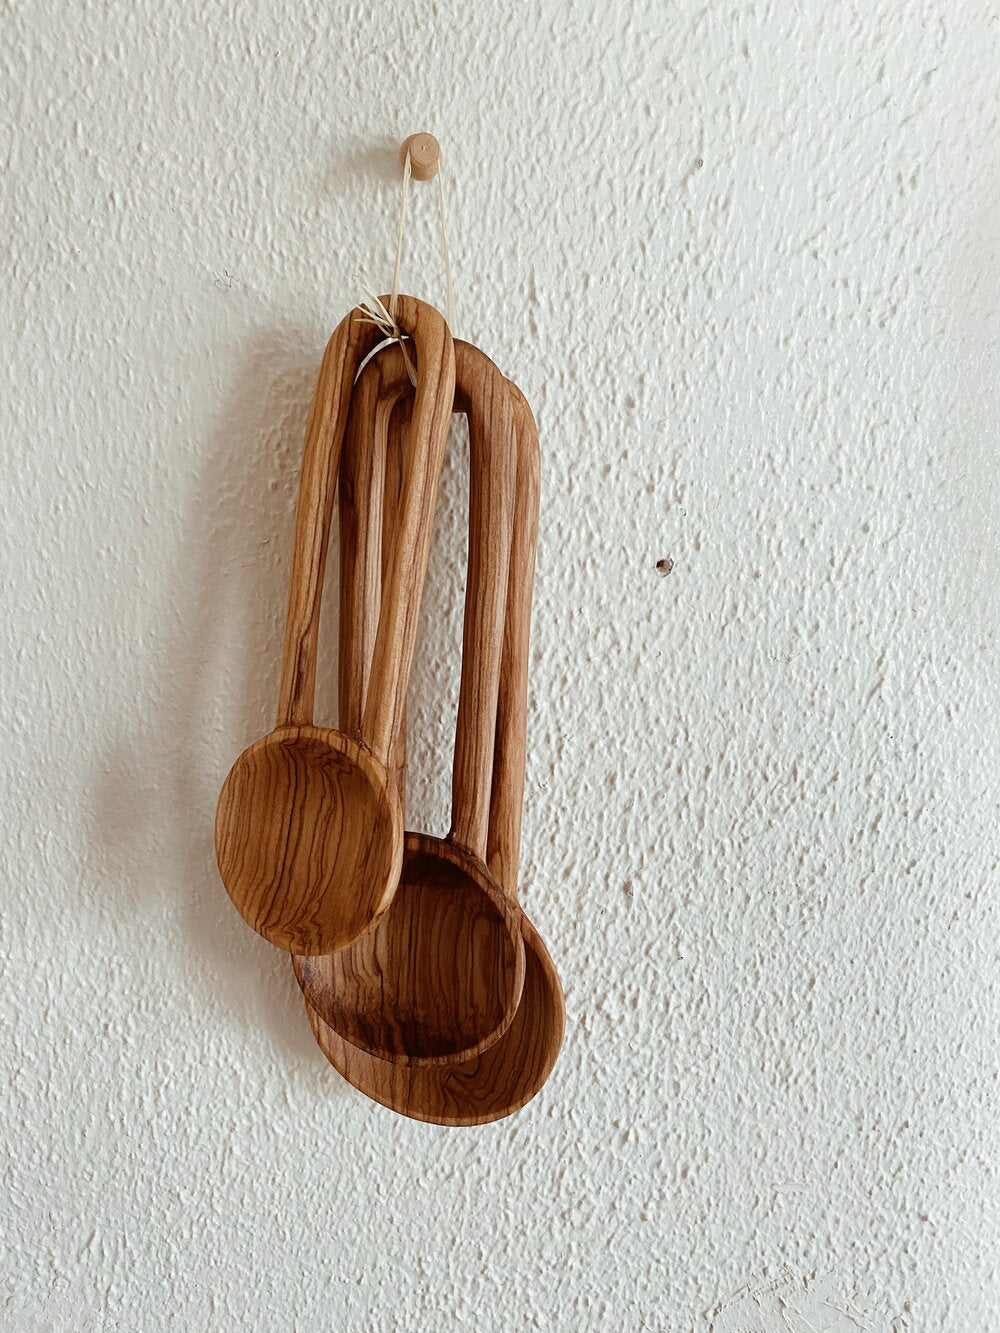 Handmade Olive Wood Arc Spoon Set